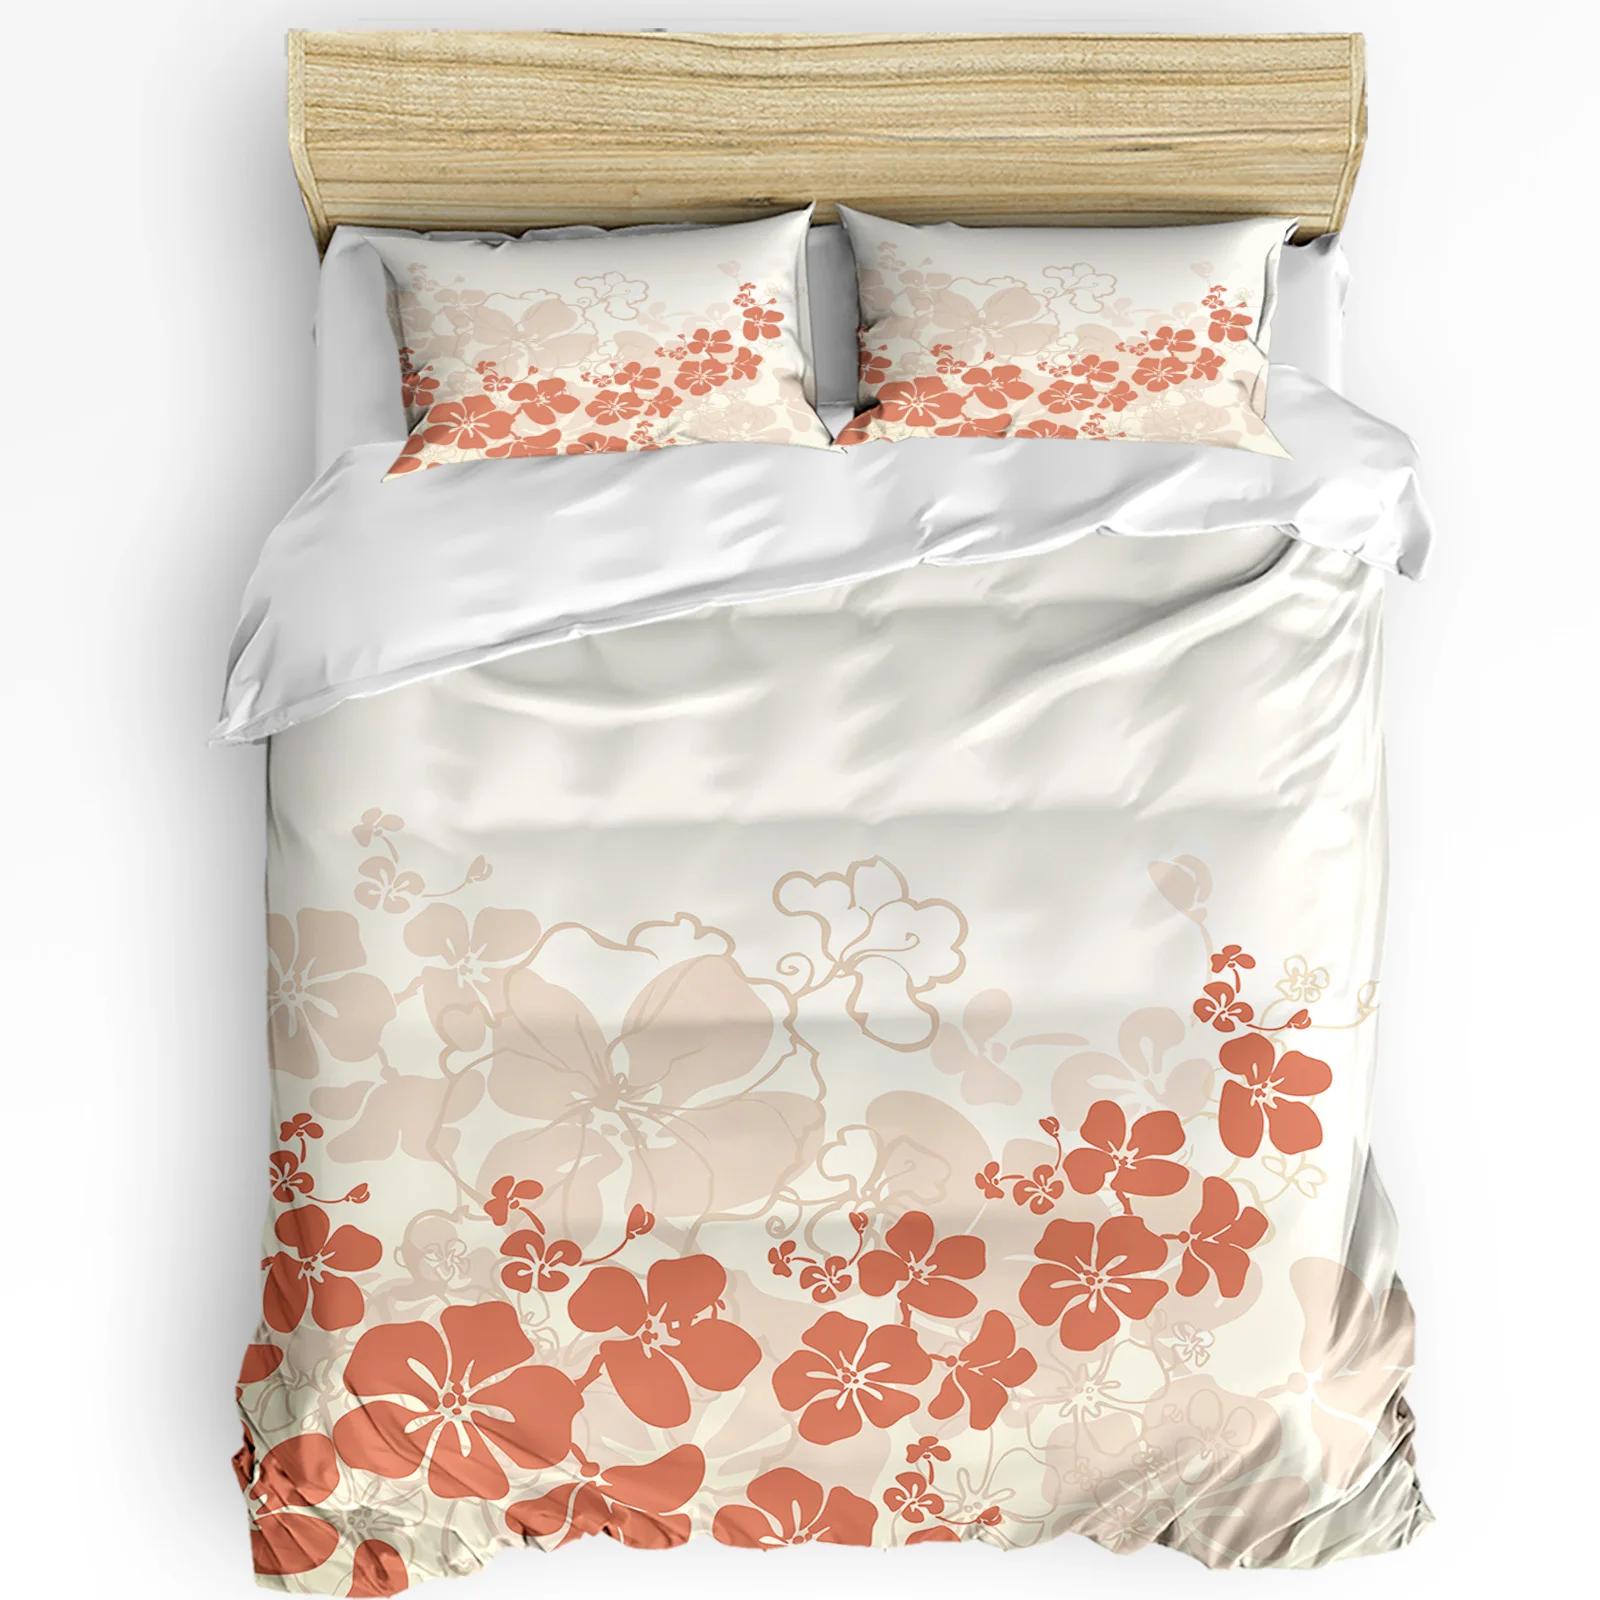 Petals Flower 3pcs Duvet Cover SetPillow Case Double Comforter Bedding Set Quilt Cover Couple Bed